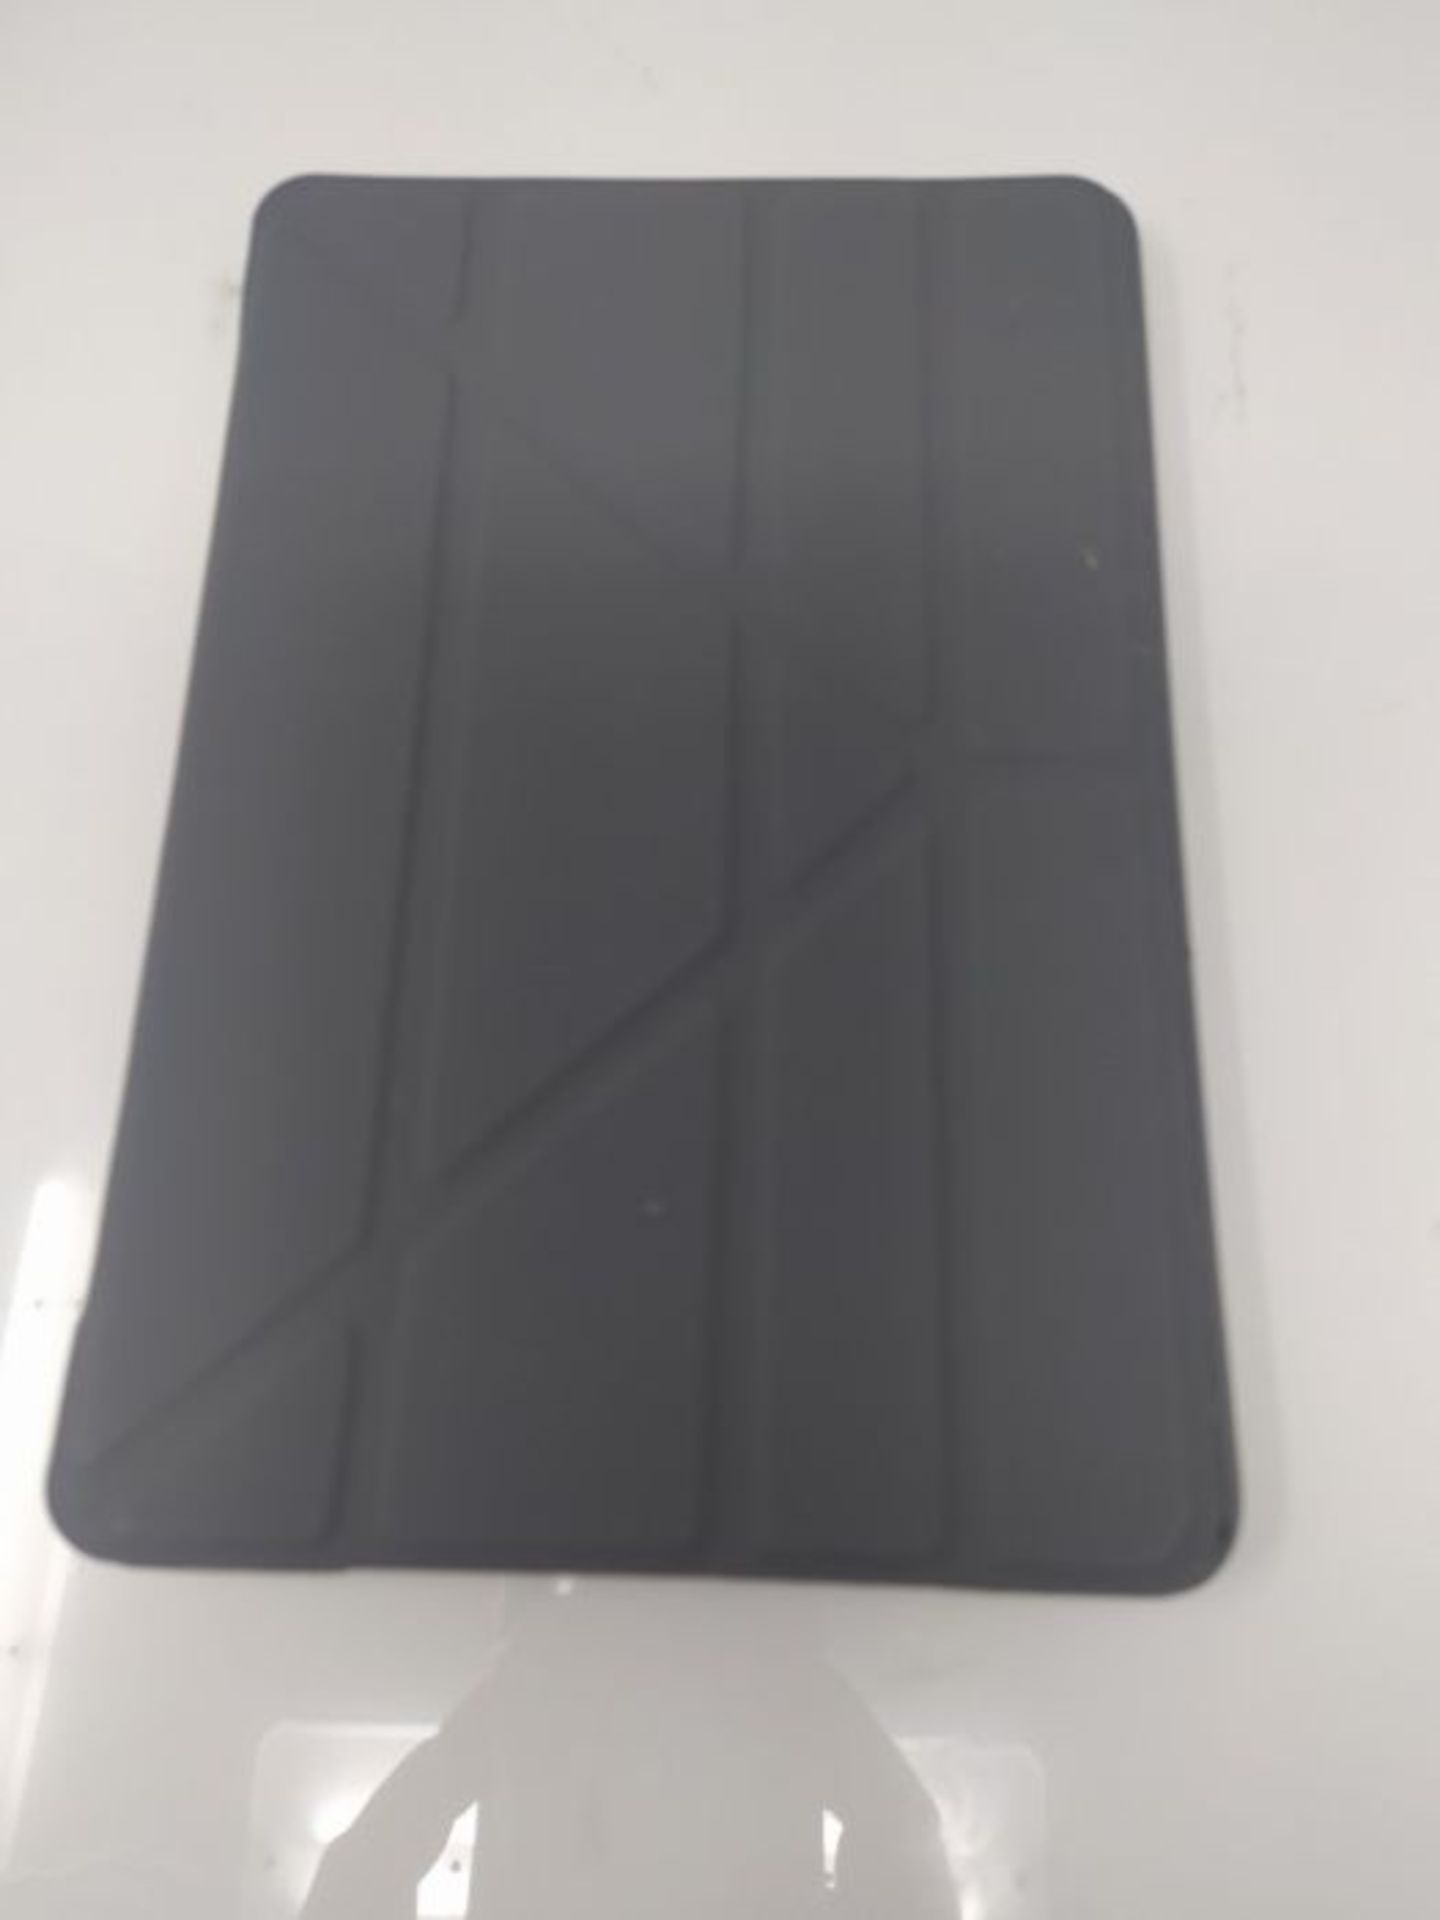 Pipetto iPad Mini 5 (2019) / Mini 4 Origami Dark Grey Slim Case with 5-in-1 Stand posi - Image 2 of 2